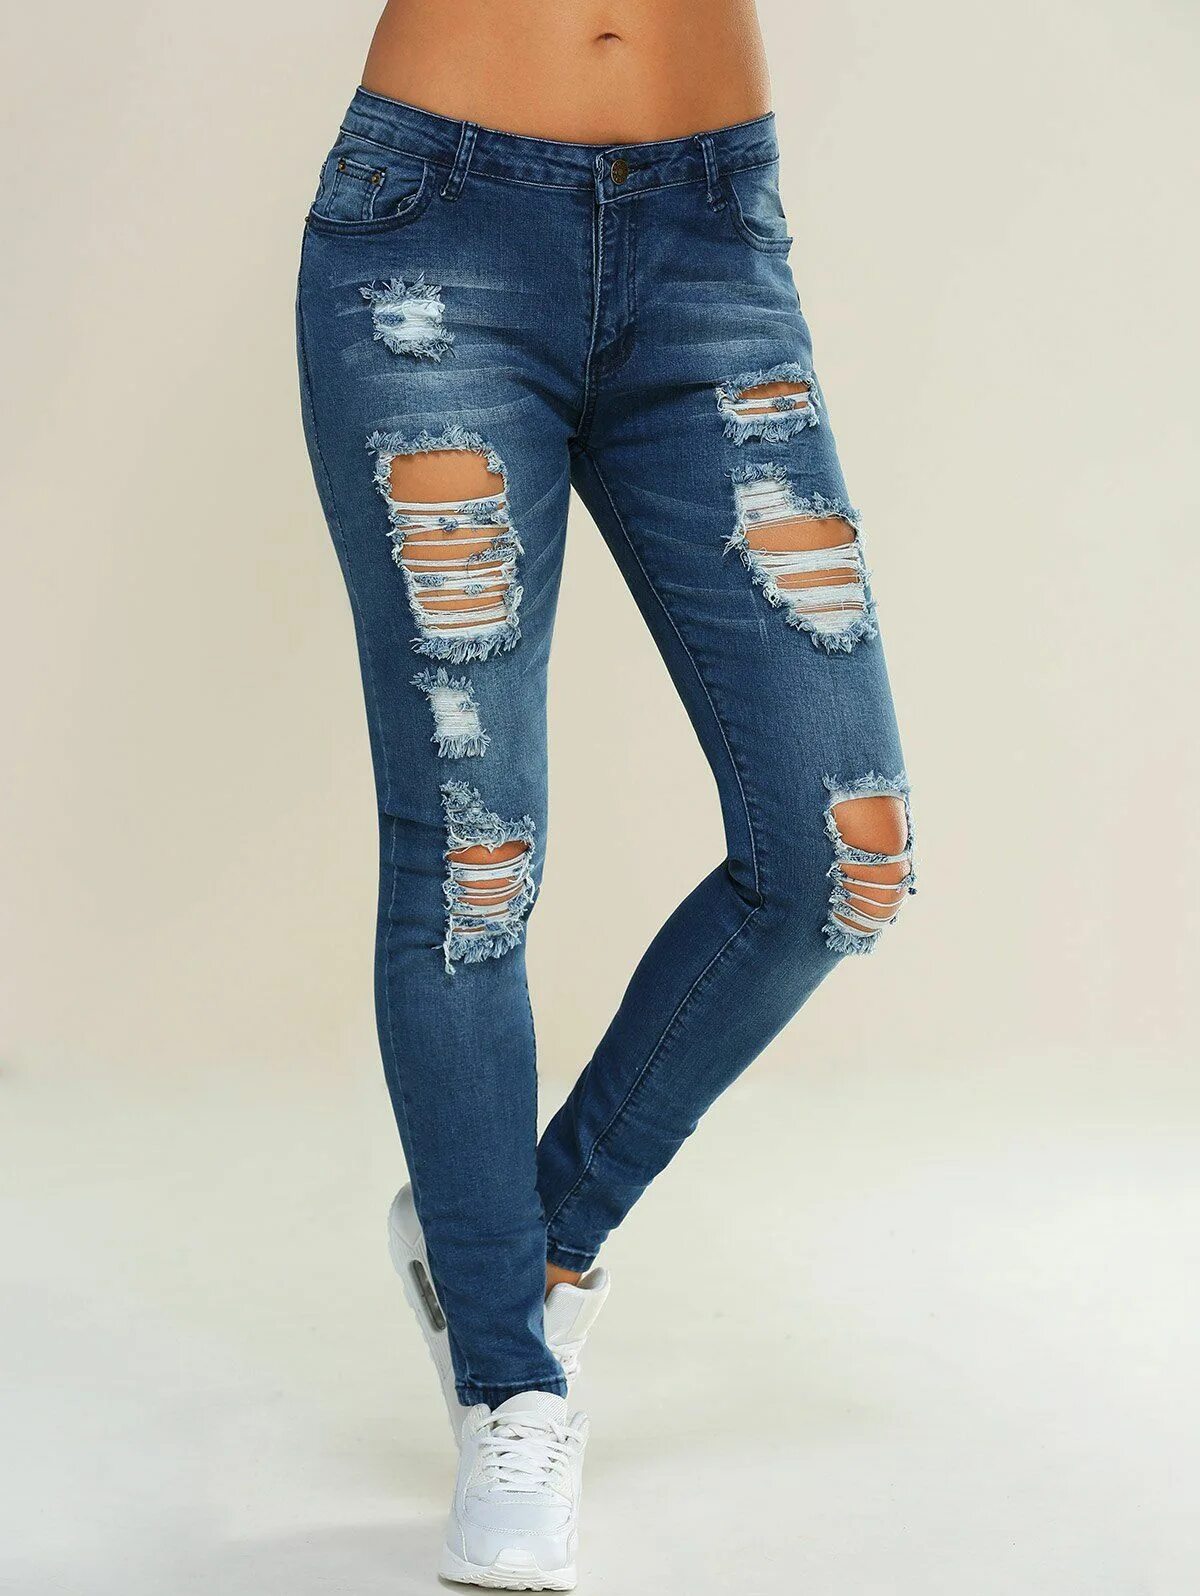 Заказать джинсы женские. Джинсы женские. Рваные джинсы женские. Джинсы женские с дырками. Драные джинсы женские.